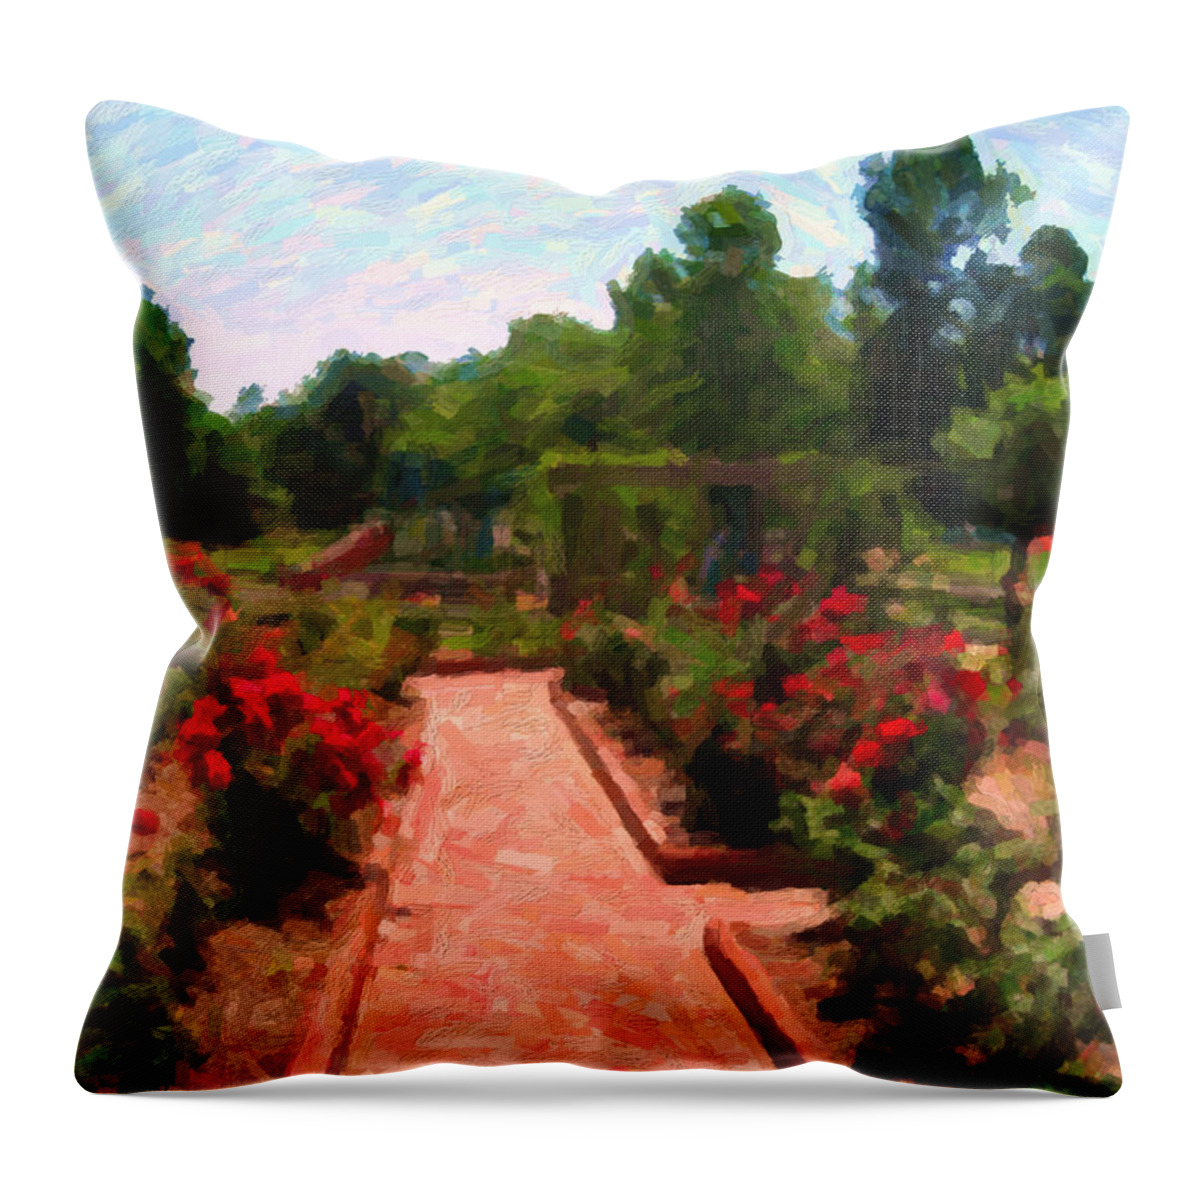 Rose Garden Throw Pillow featuring the digital art A Rose Garden Serenade by David Zimmerman